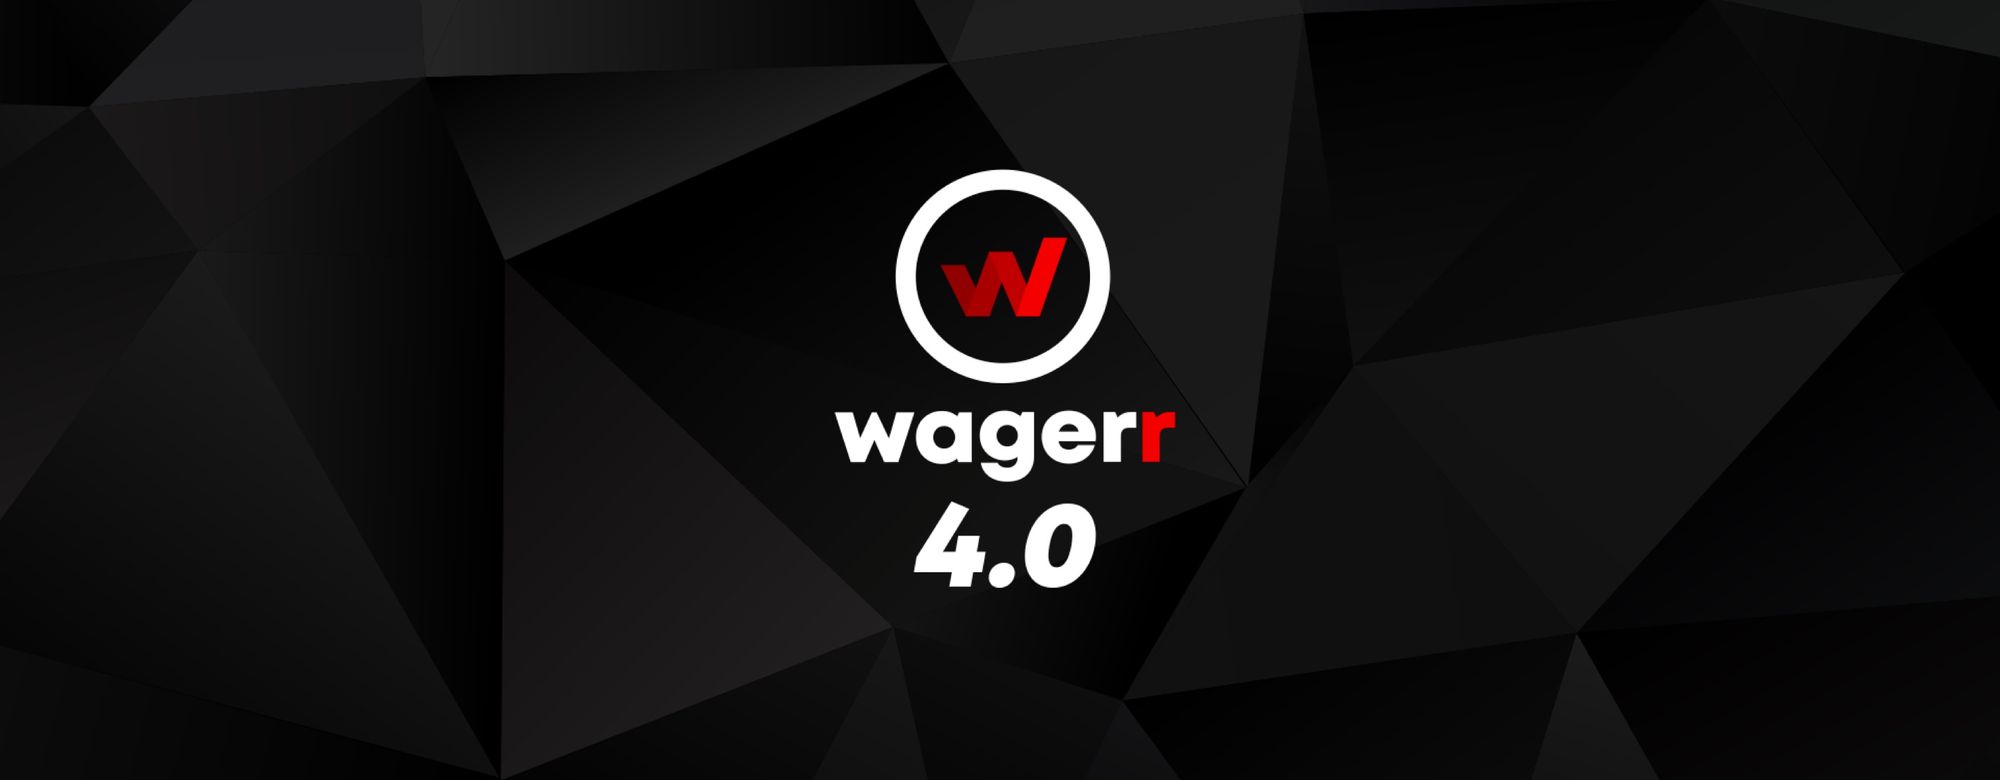 Wagerr 4.0 "Reno"